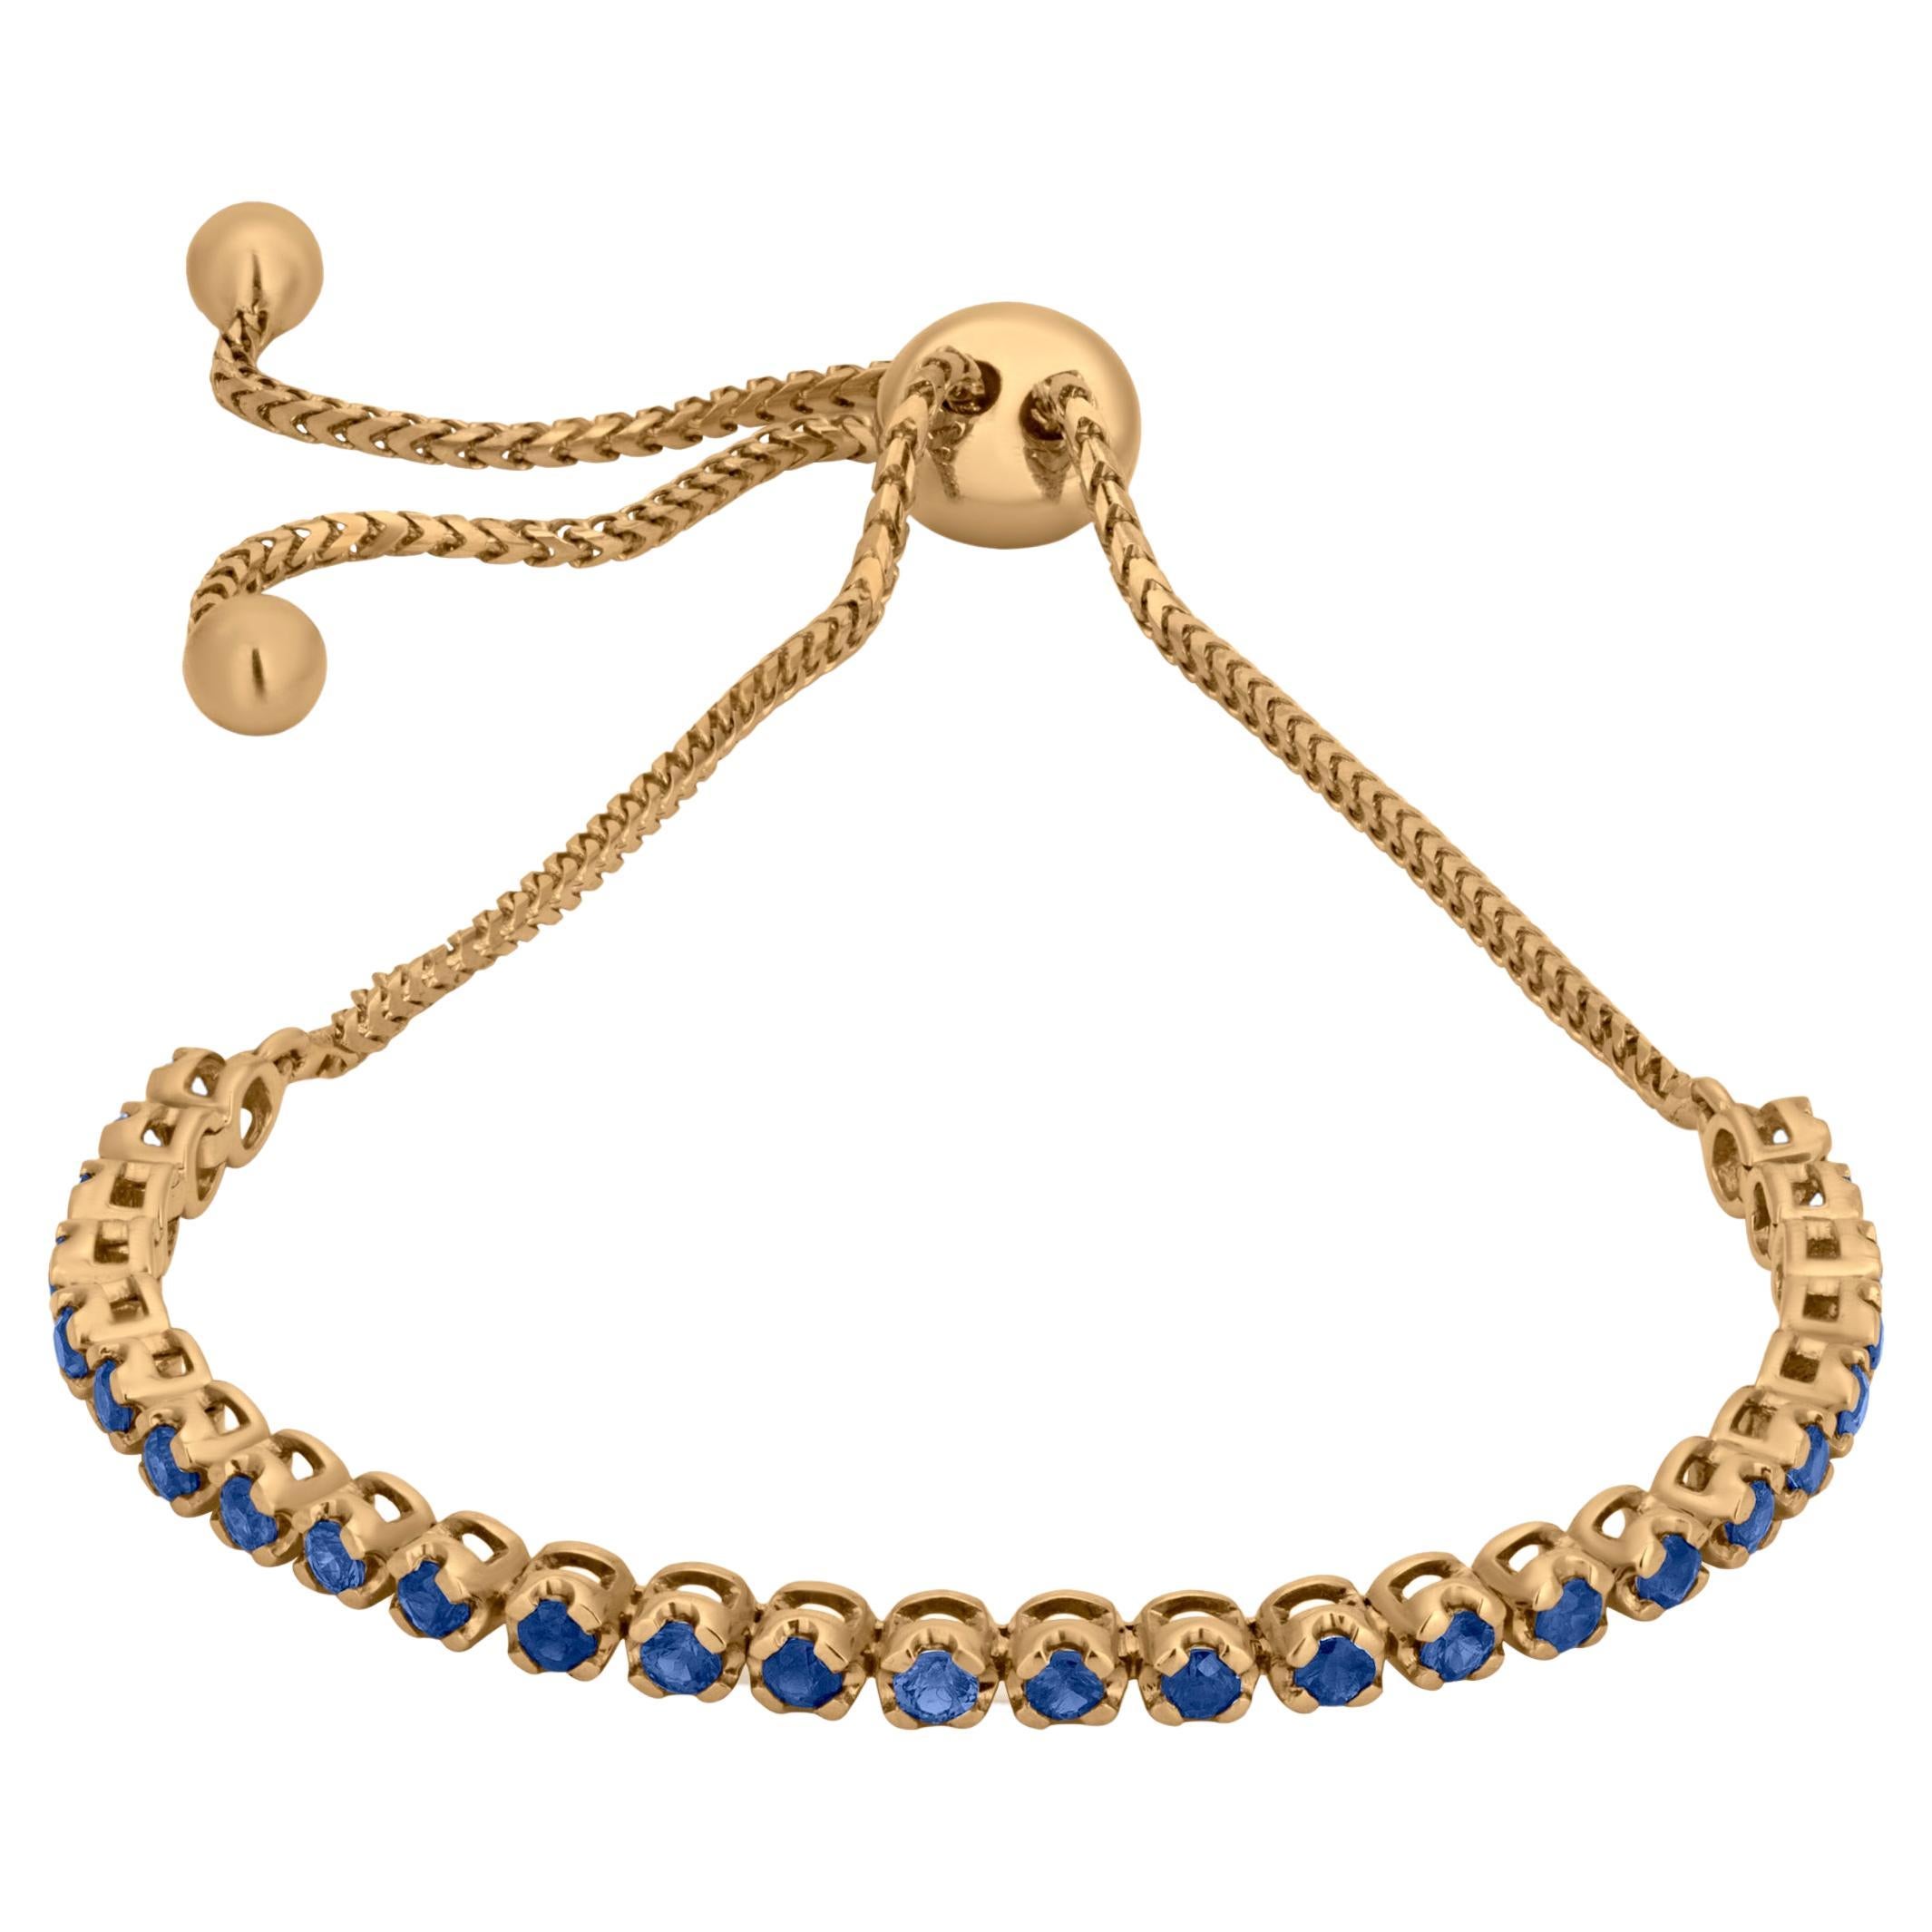 Gemistry 1.19 Carat T.W. Blue Sapphire Tennis Bracelet in 18k / 14k Yellow Gold